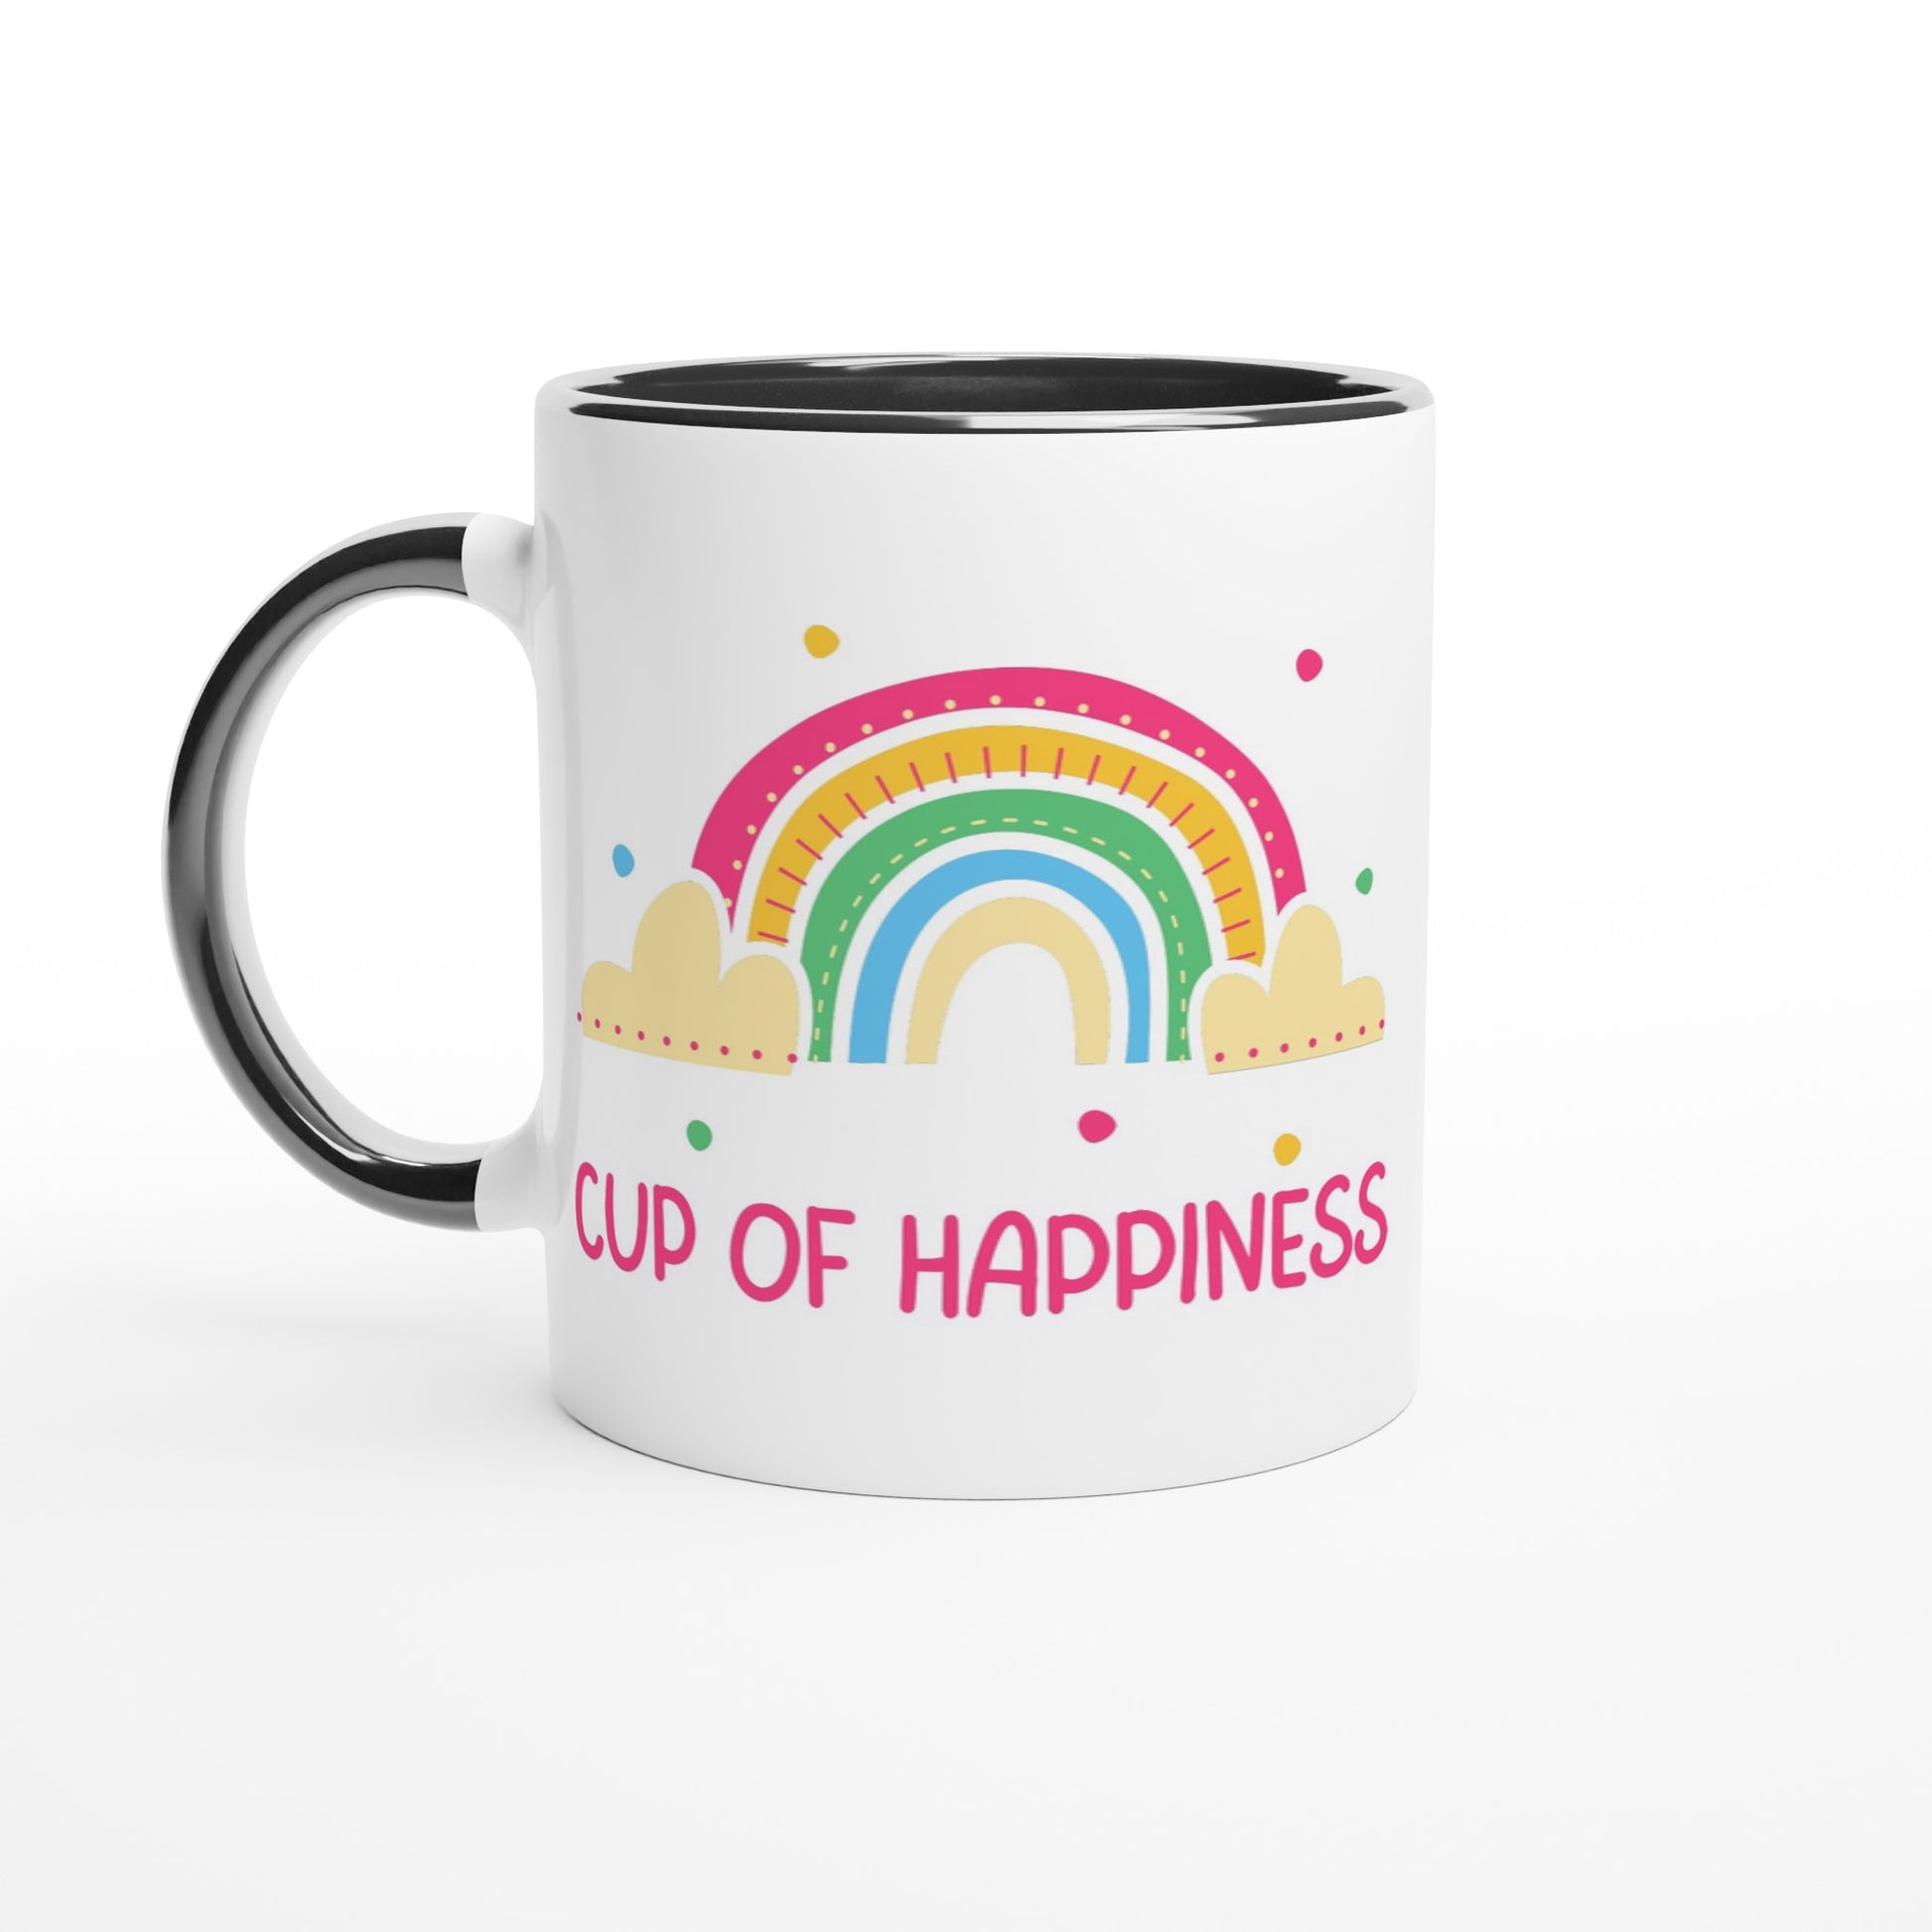 Cup Of Happiness - White 11oz Ceramic Mug with Colour Inside Ceramic Black Colour 11oz Mug positivity